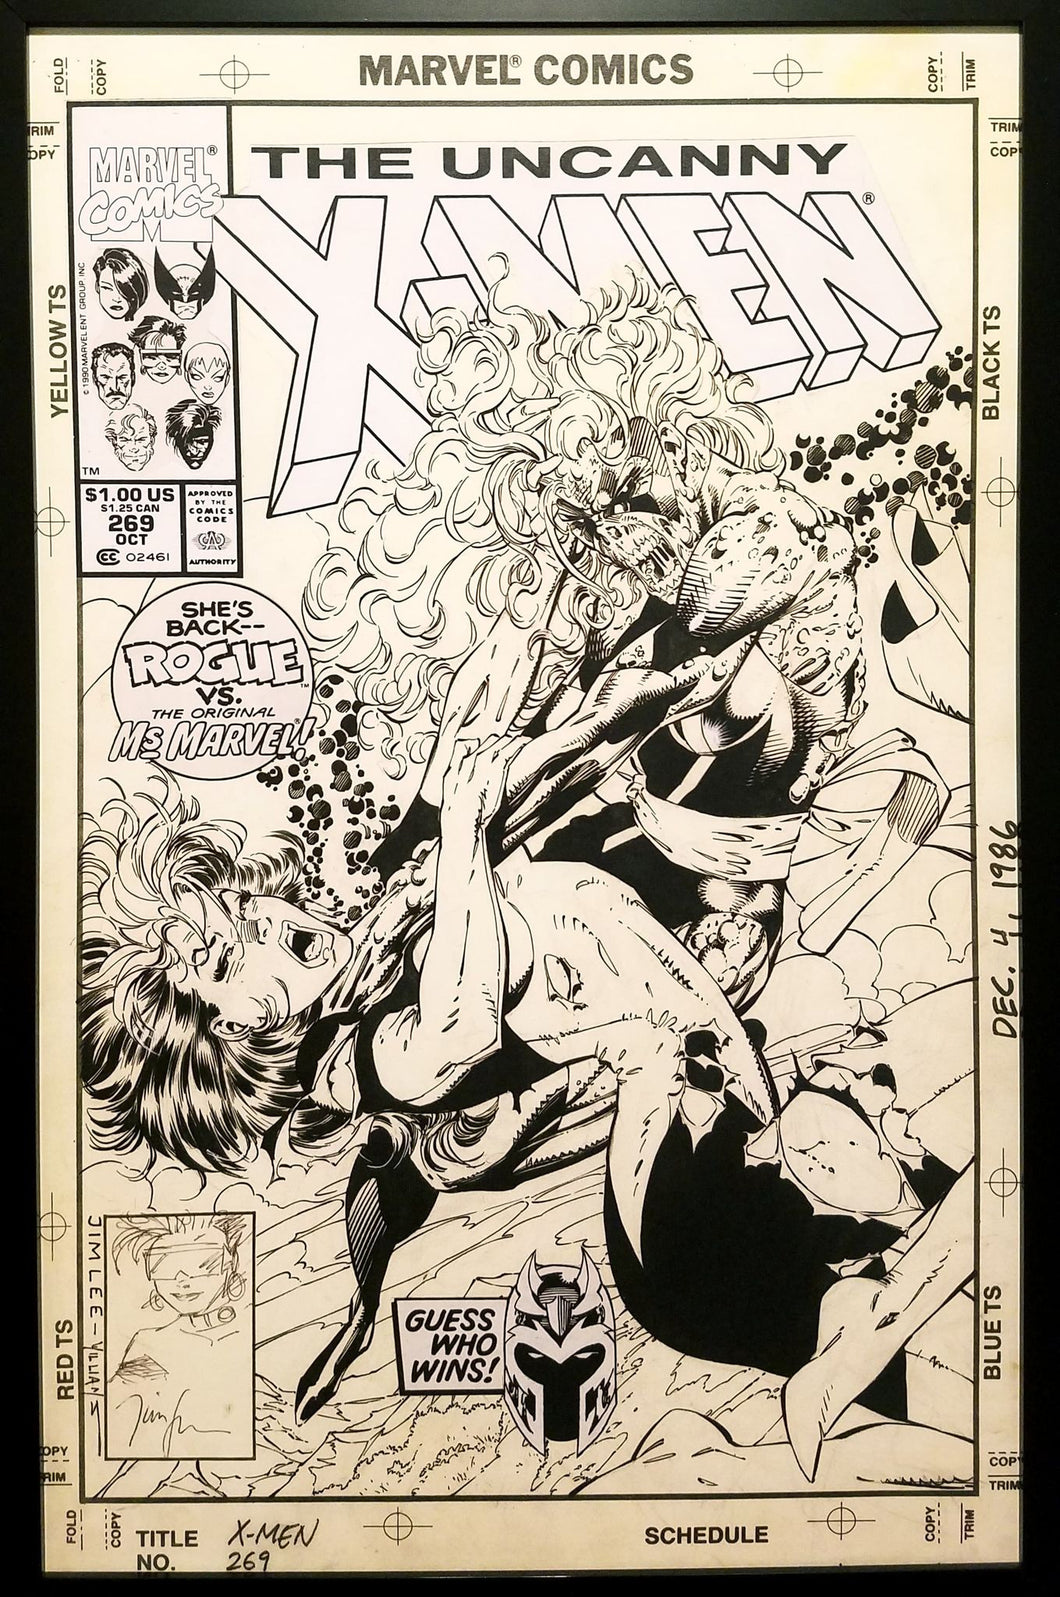 Uncanny X-Men #269 Jim Lee 11x17 FRAMED Original Art Poster Marvel Comics